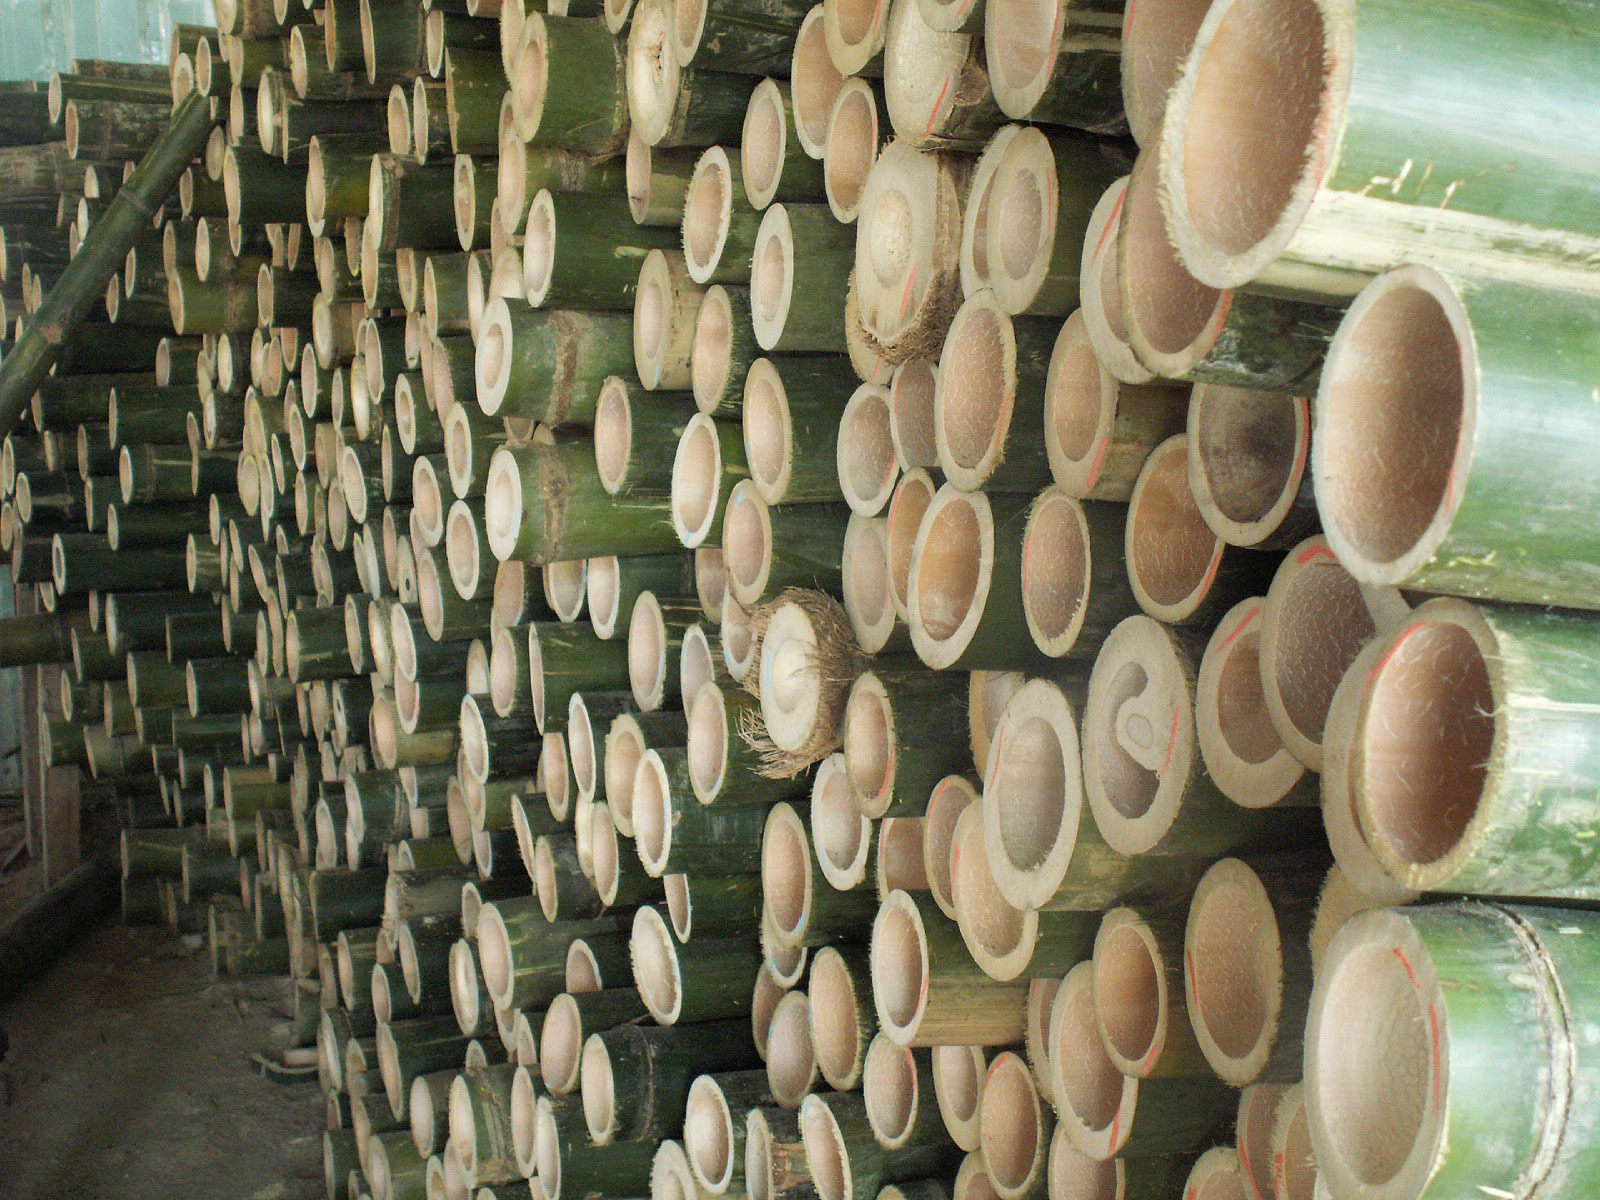 Närbild av många tätt packade gröna bambustänger.